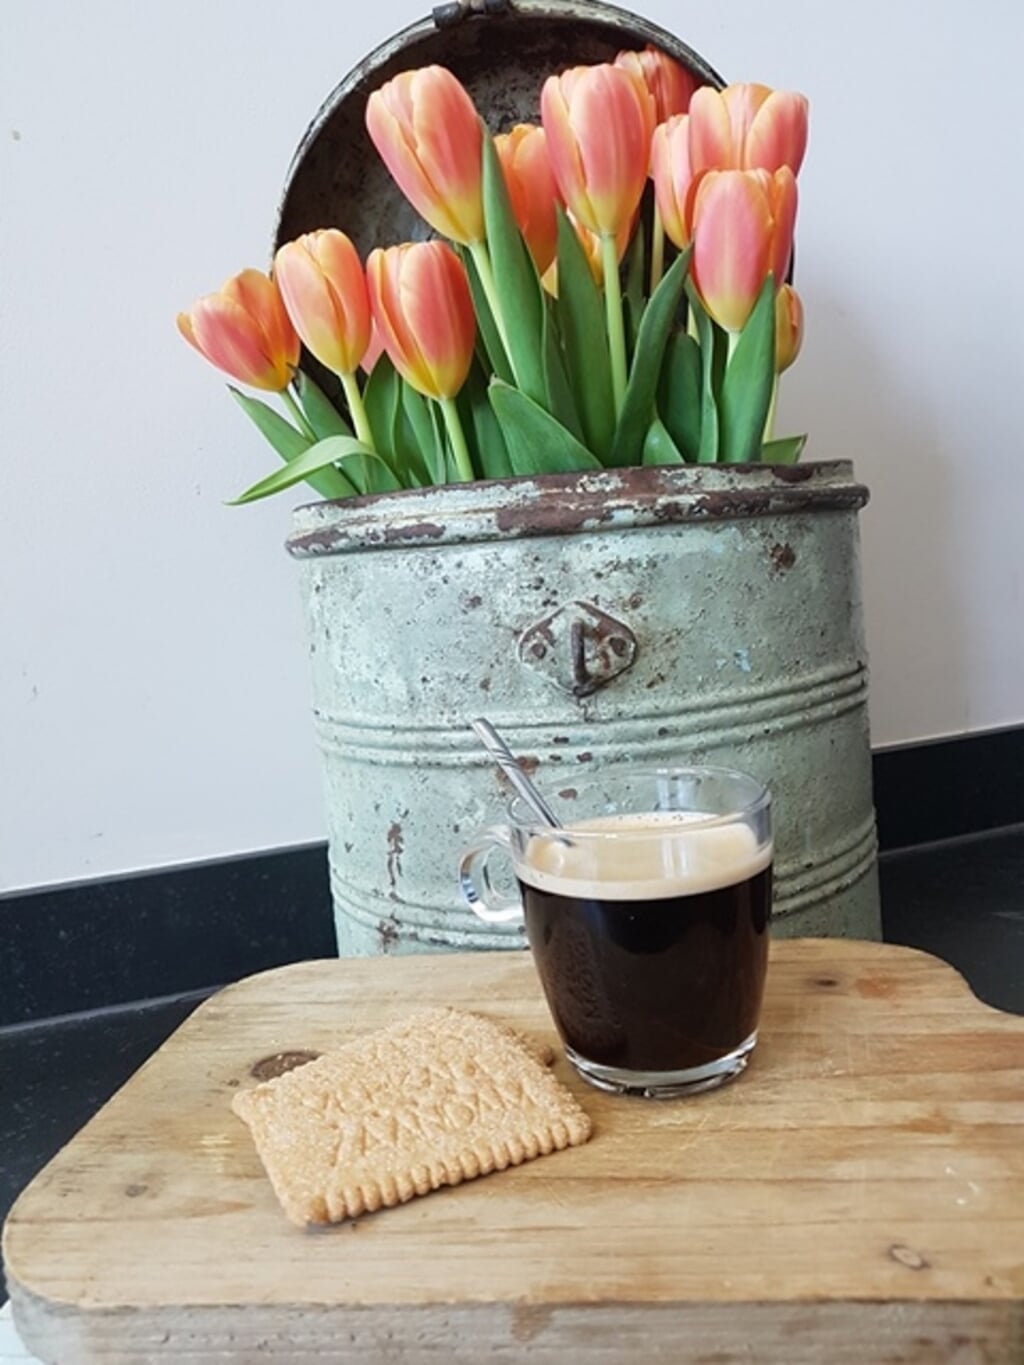 Koffie met koekjes. (Foto: Vrijwilliger Marikenhuis)